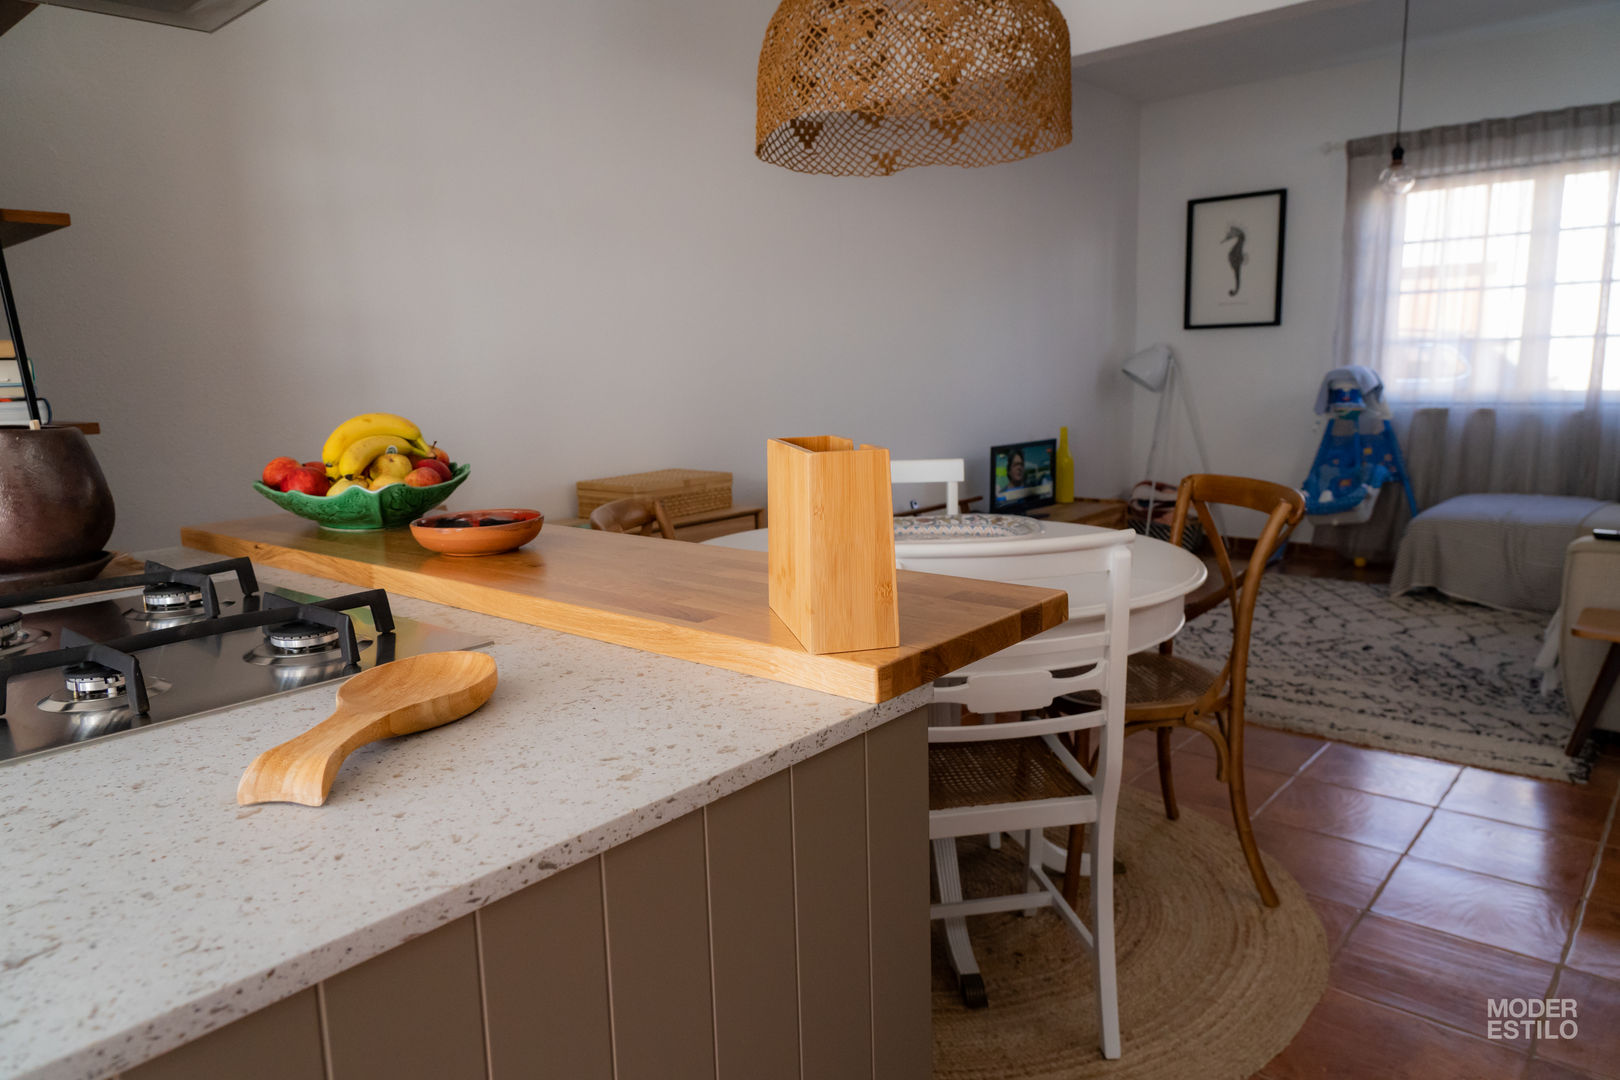 Qualidade moderna com um toque rústico, Moderestilo - Cozinhas e equipamentos Lda Moderestilo - Cozinhas e equipamentos Lda Rustic style kitchen Bench tops